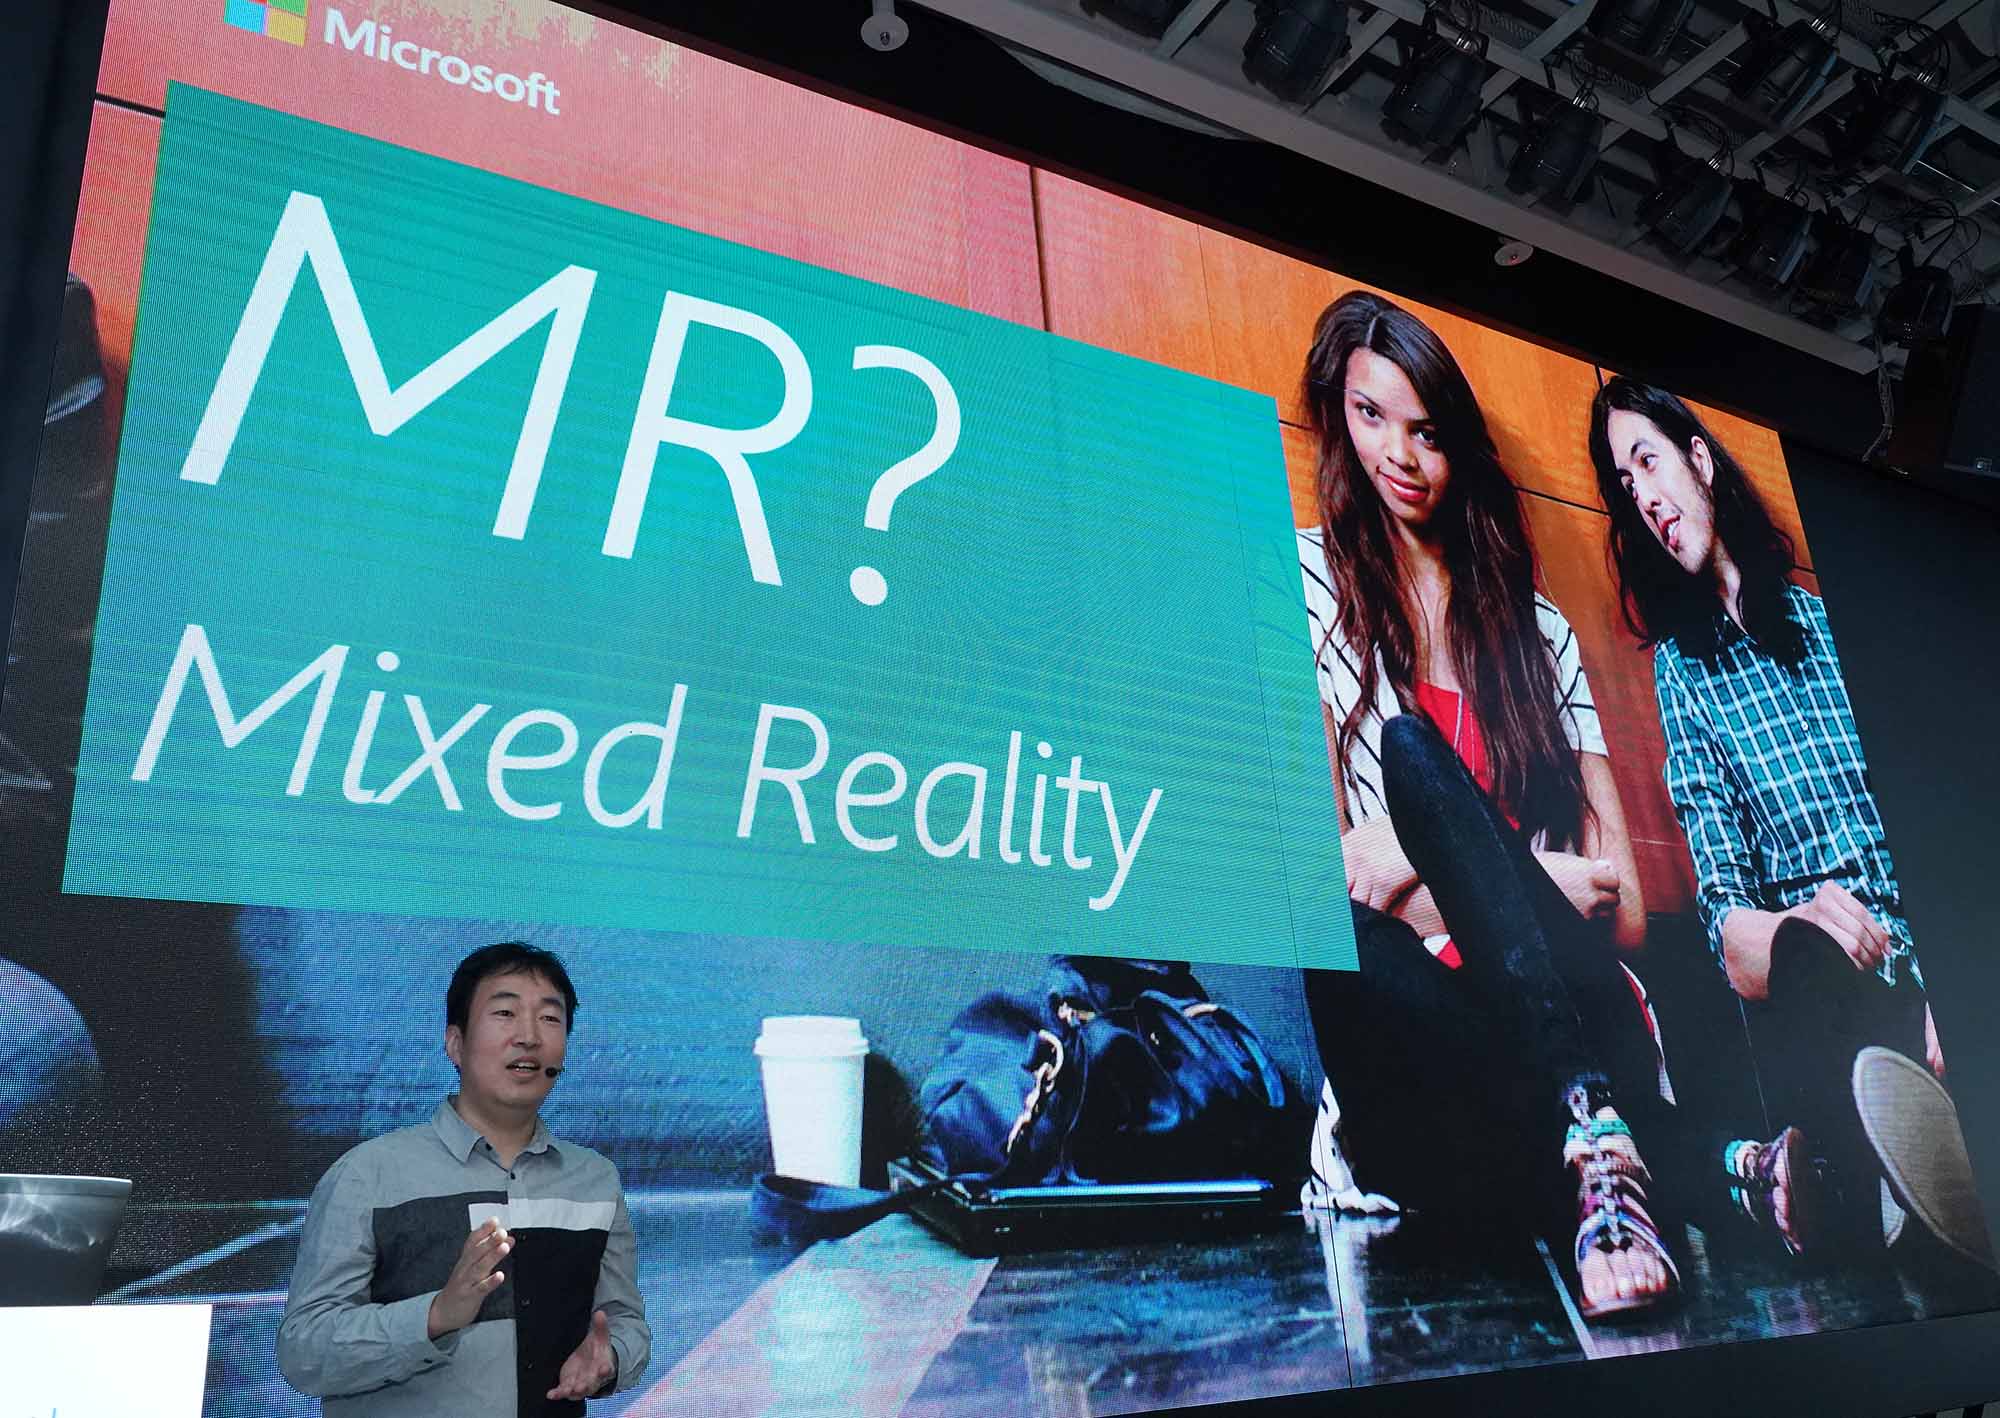 한국마이크로소프트 김영욱 부장이 윈도우 MR의 특징을 설명하고 있다.